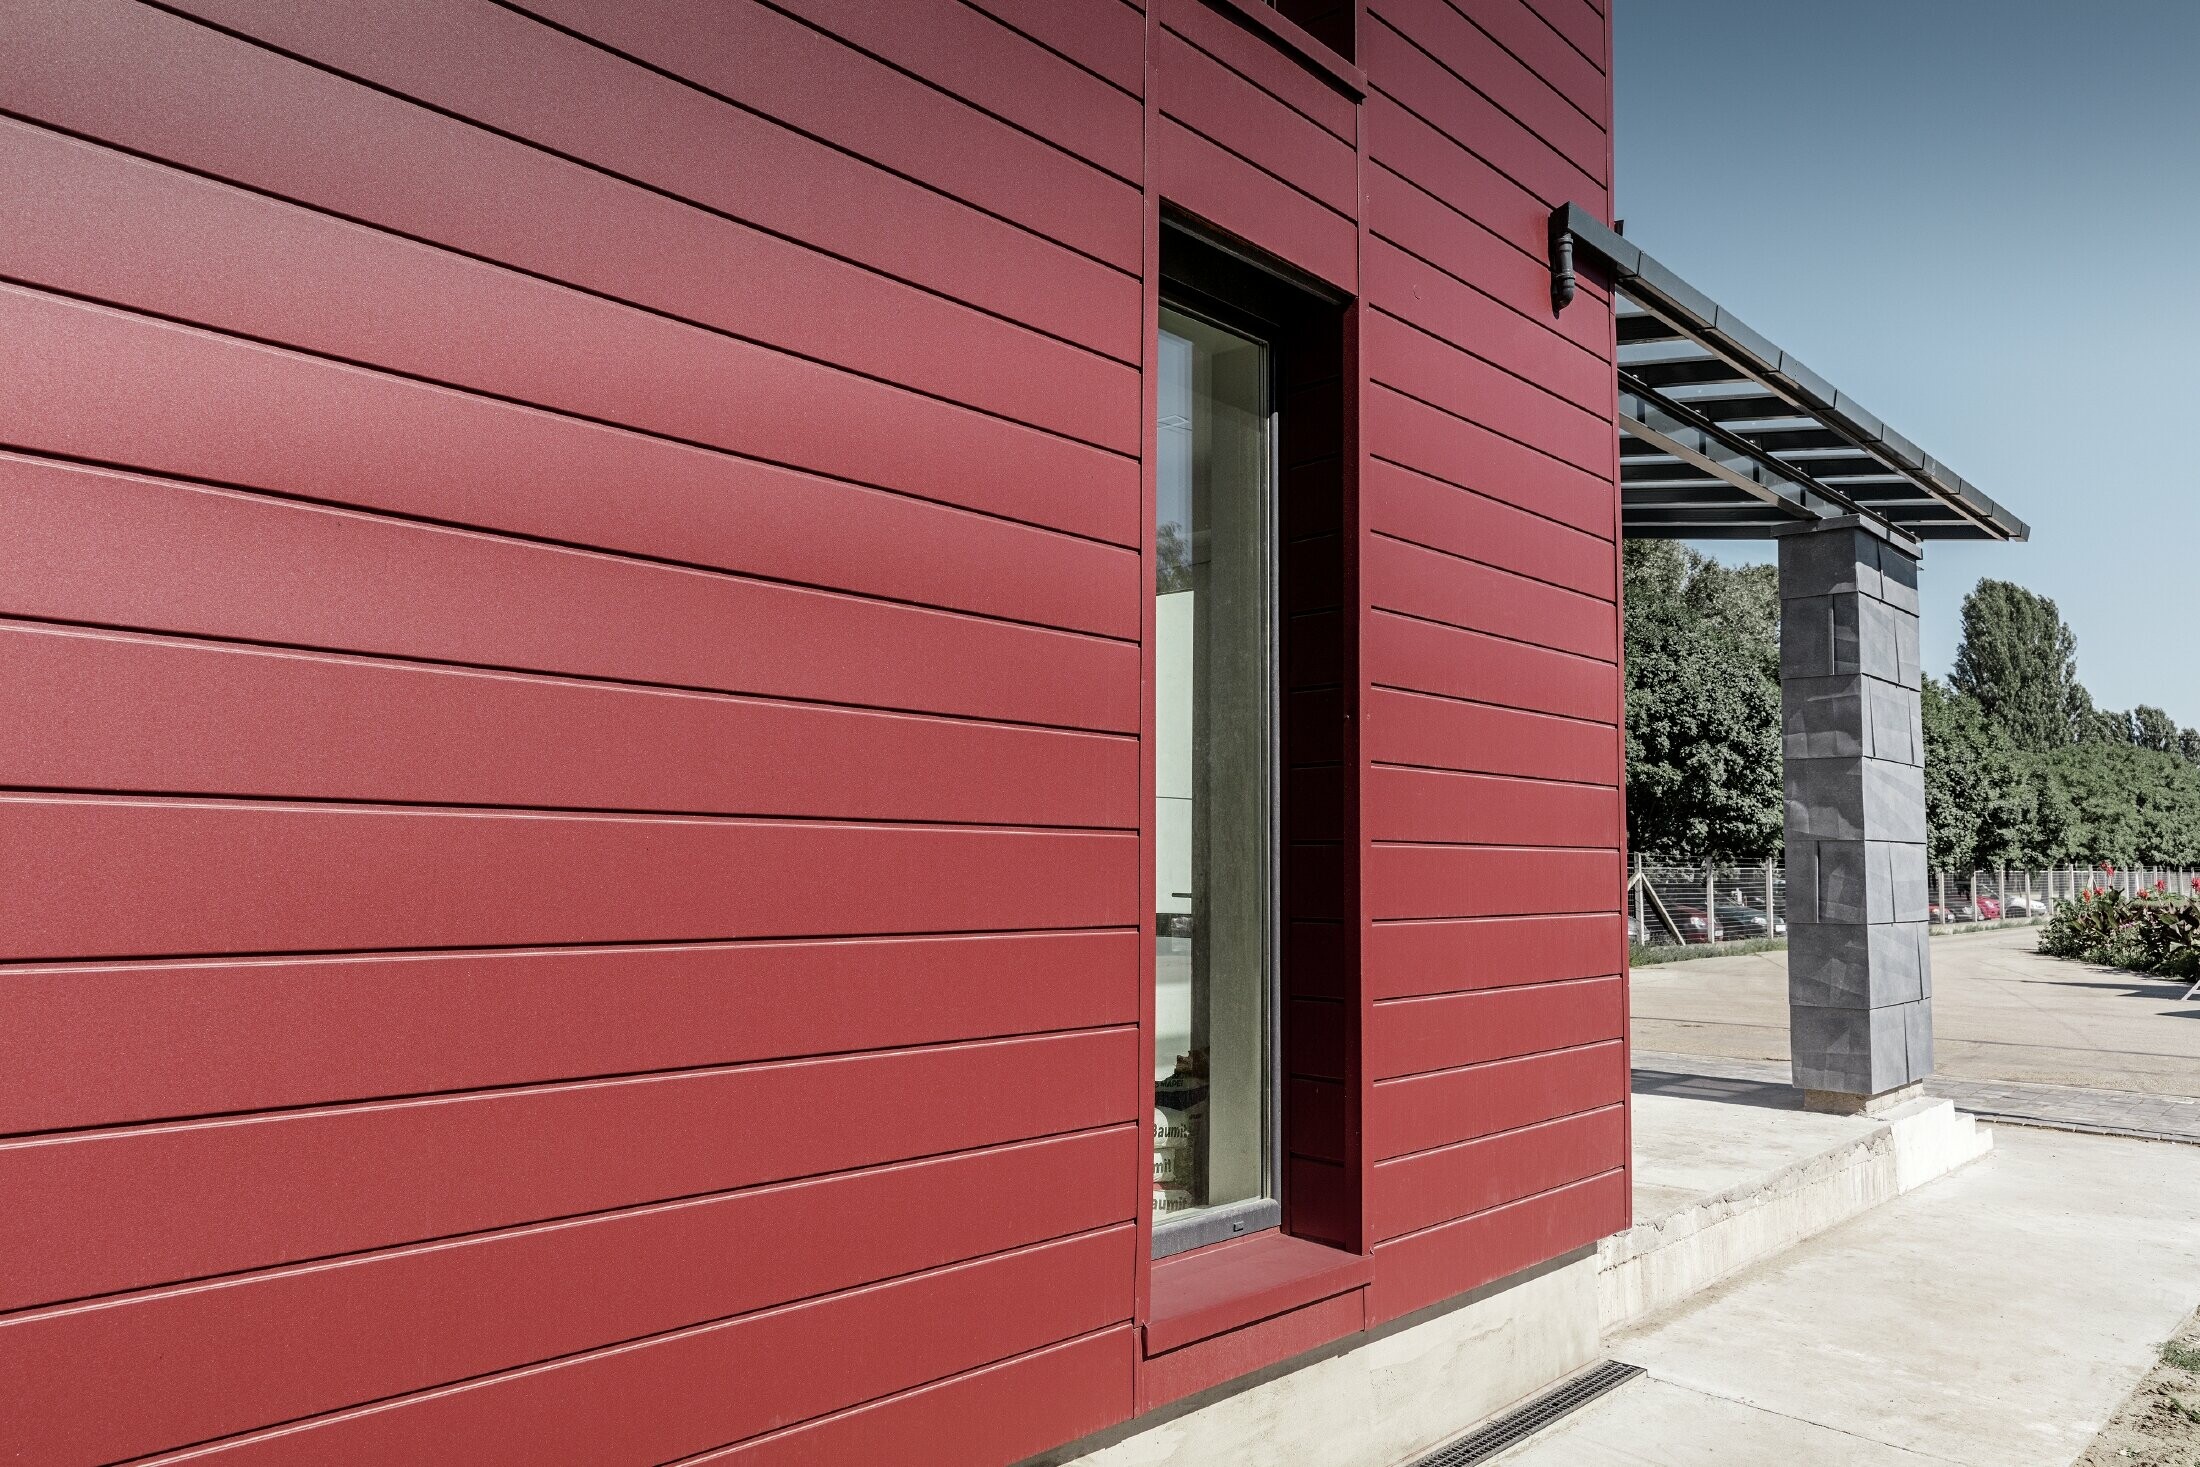 Complexe de bureaux moderne — Façade tricolore (blanc, rouge et gris pierre) réalisée à partir de produits en aluminium PREFA (sidings, panneaux de façade FX.12 et panneaux composites en aluminium)